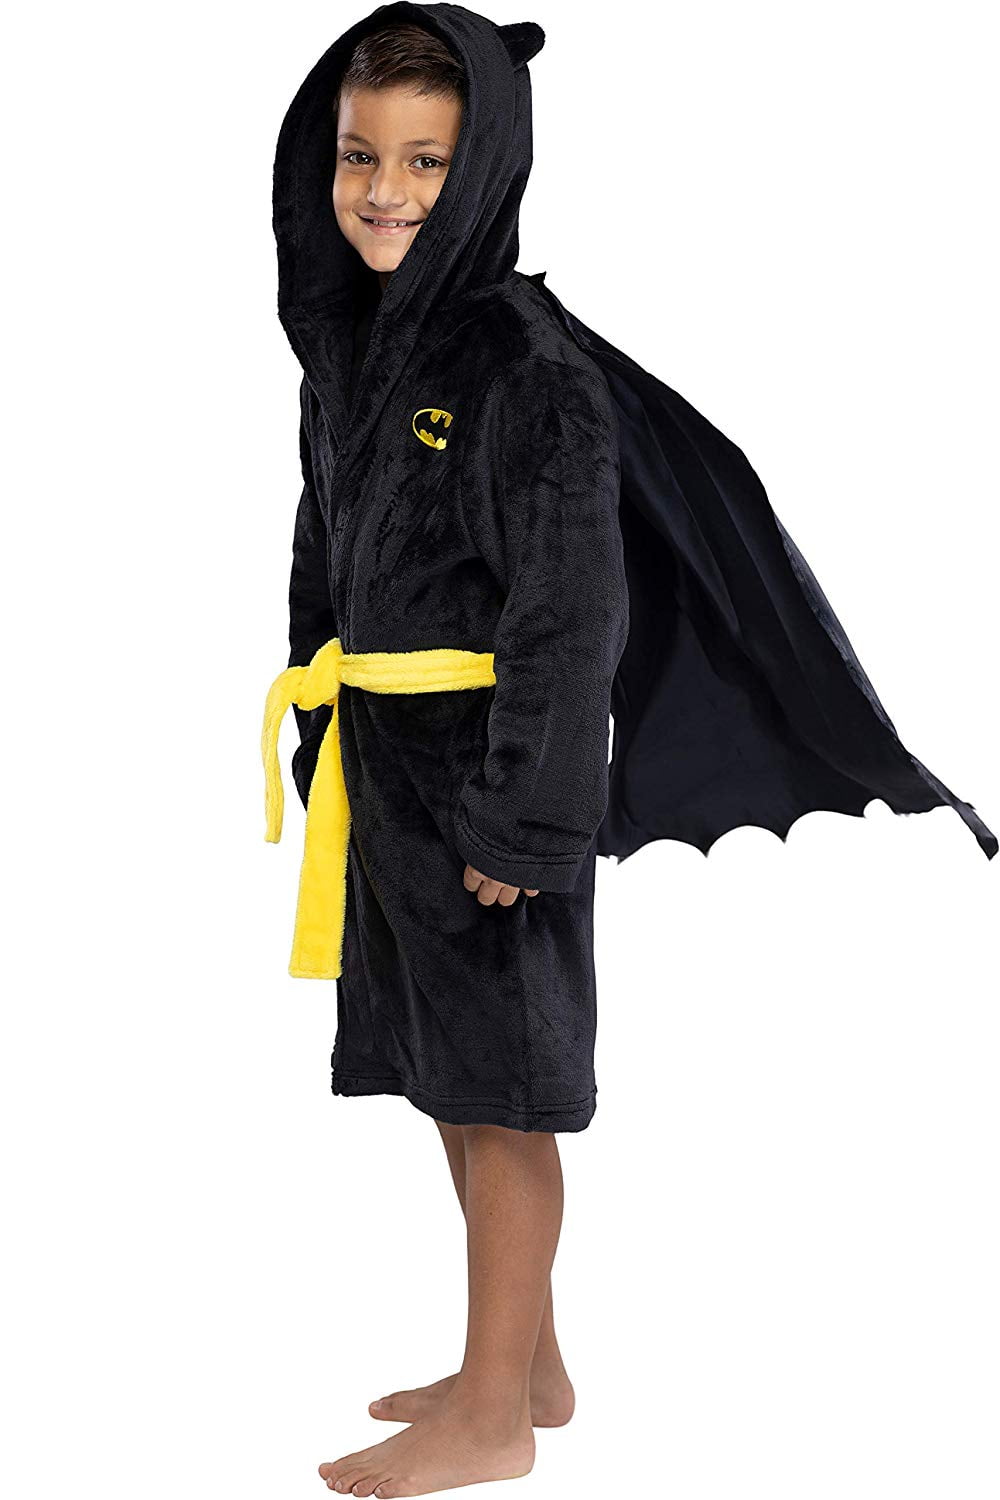 DC Comics Batman Fleece Dressing Gown Child Sizes 